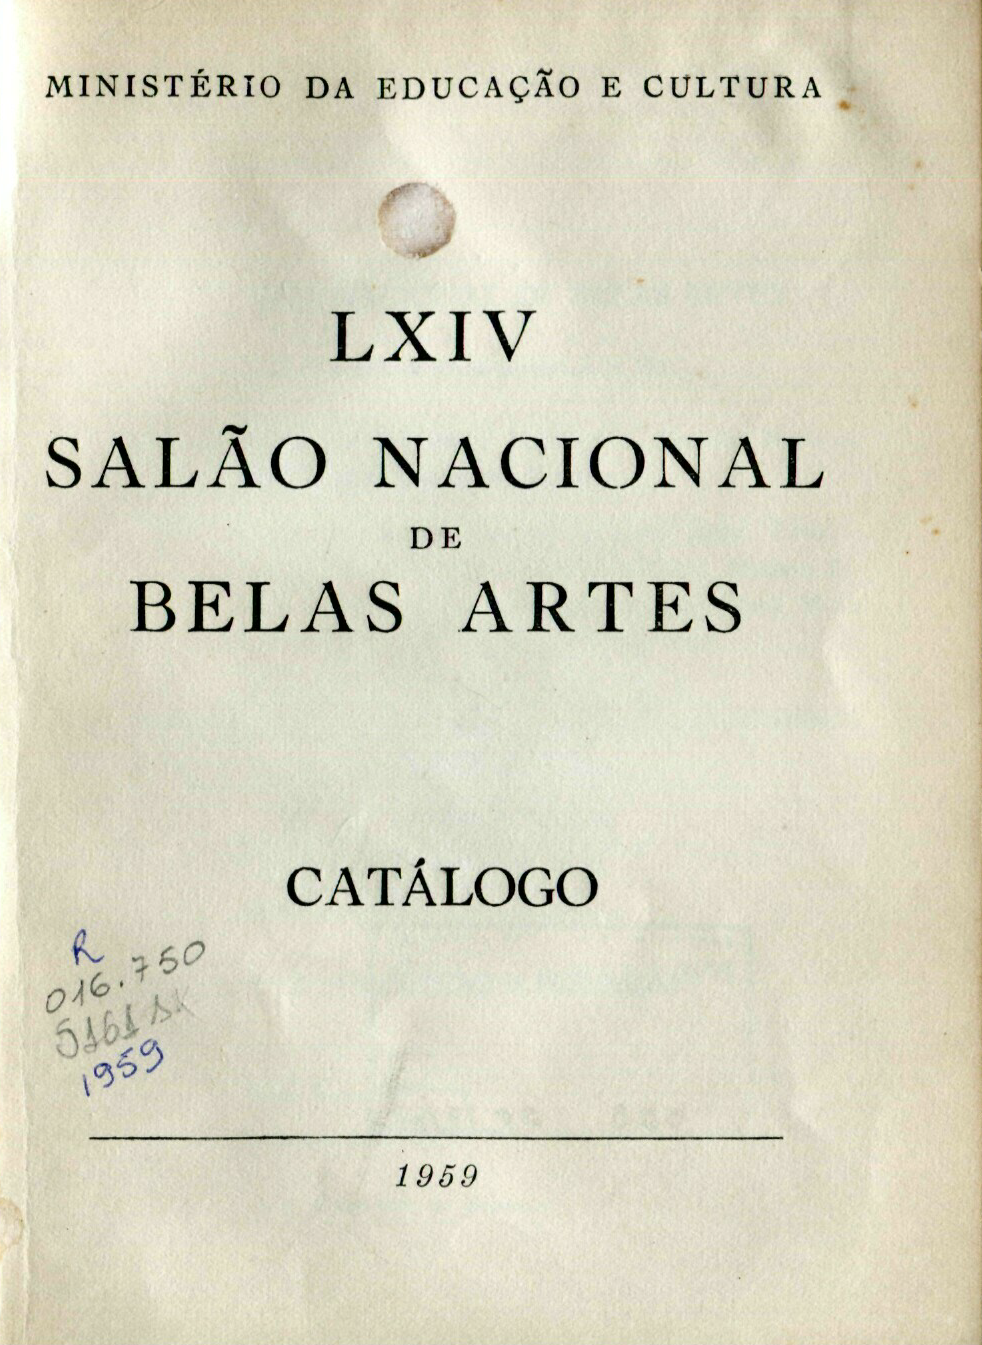 Capa do Livro LXIV Salão Nacional de Belas Artes - Catálogo 1959